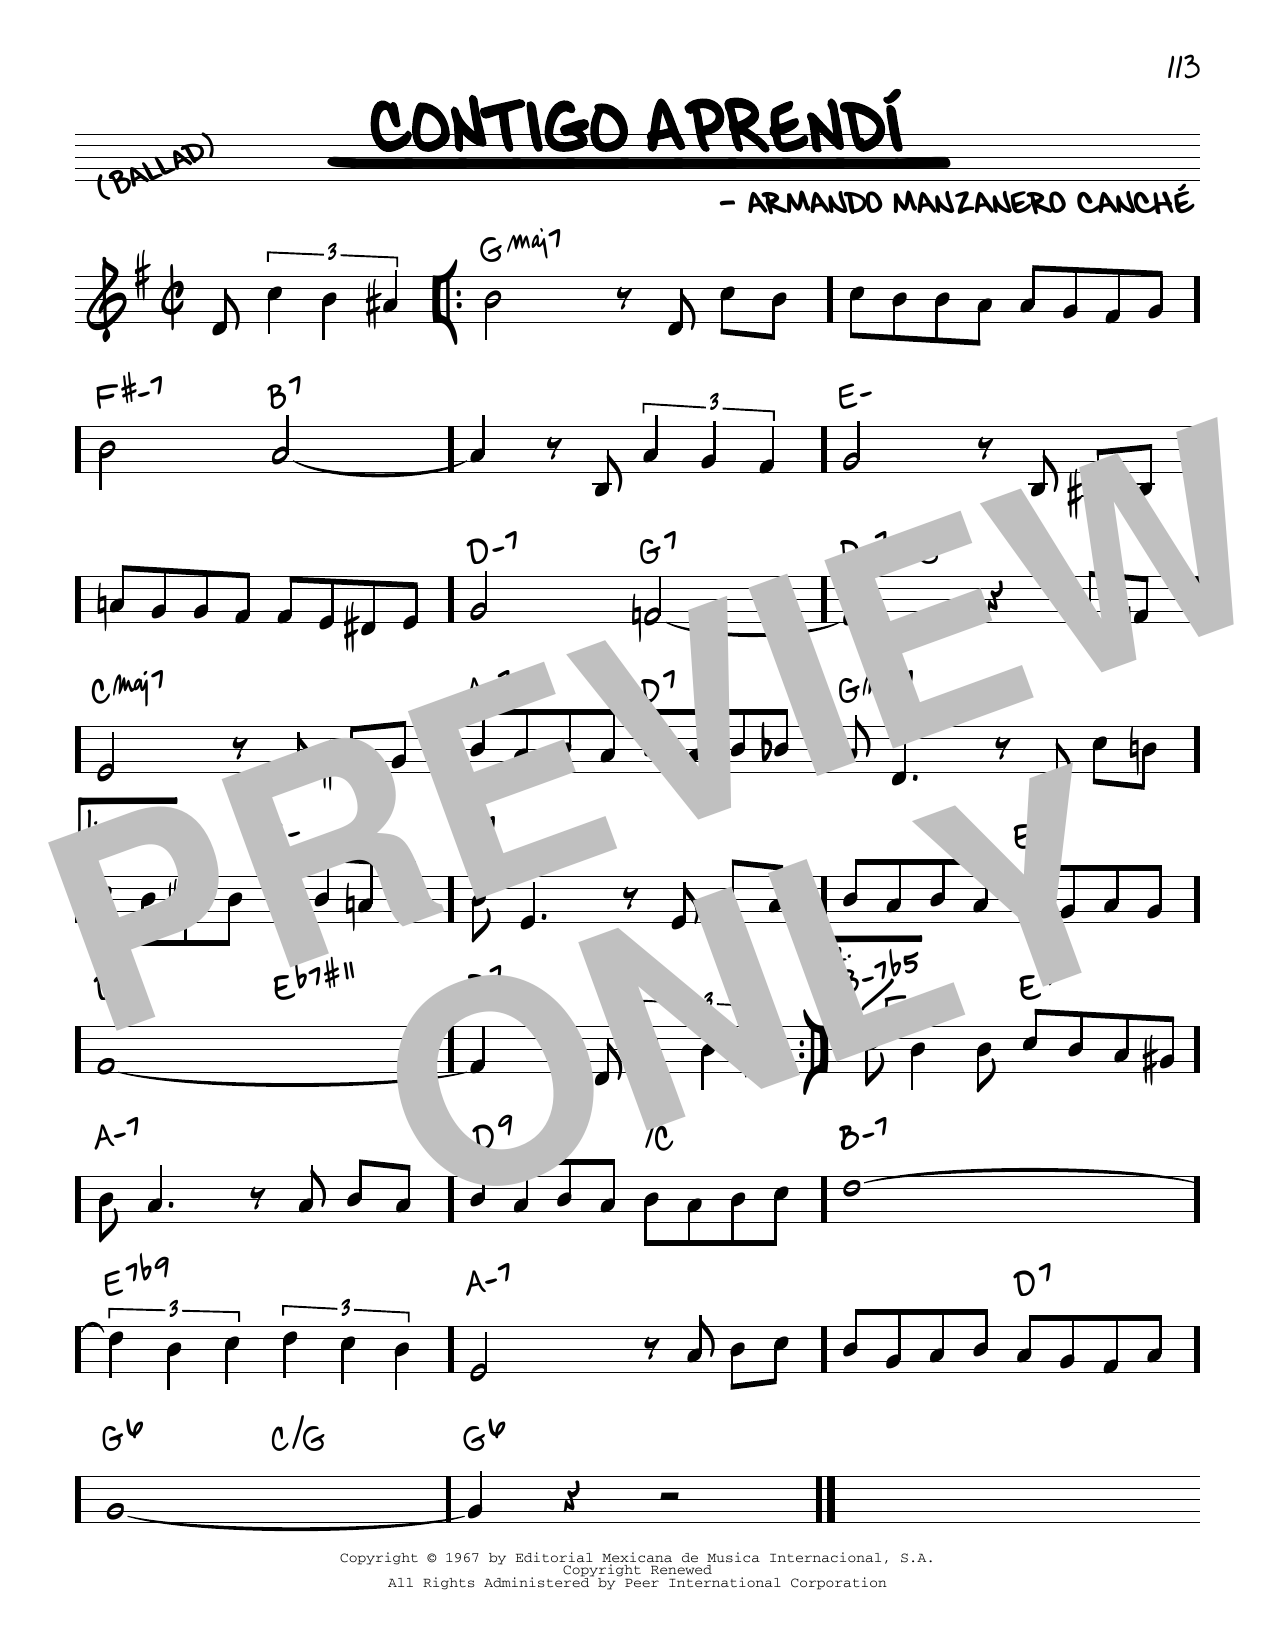 Download Armando Manzanero Canche Contigo Aprendi Sheet Music